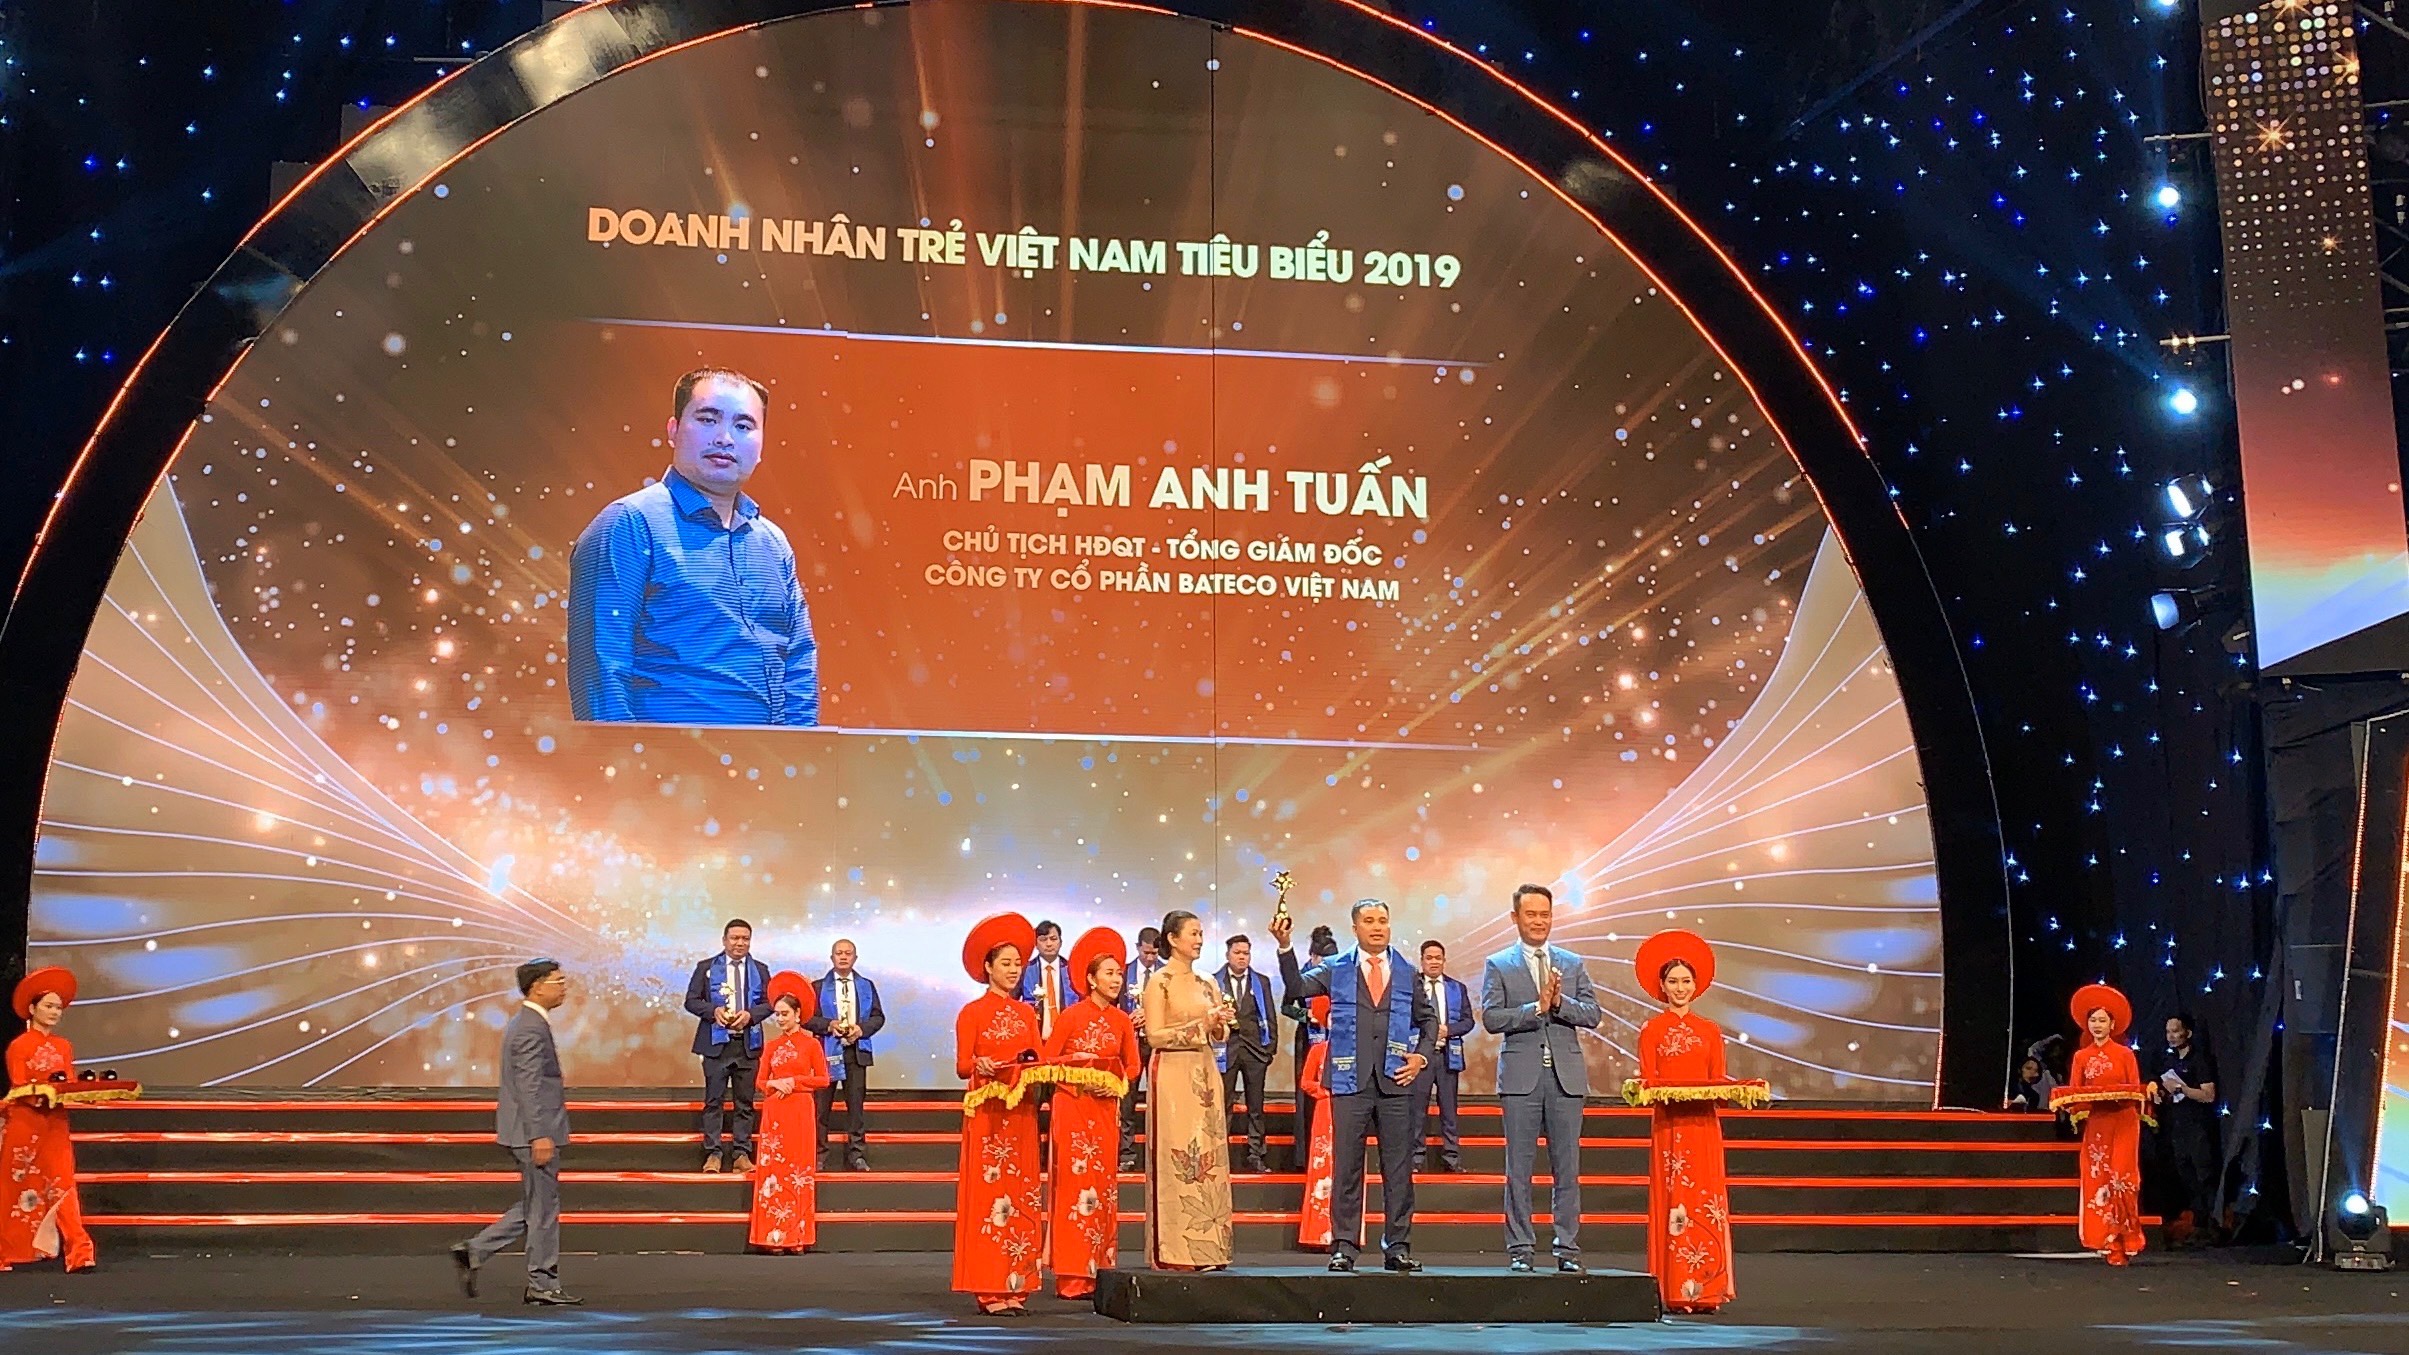 Toàn cảnh lễ trao Giải thưởng Sao Đỏ – Doanh nhân trẻ Việt Nam tiêu biểu 2019